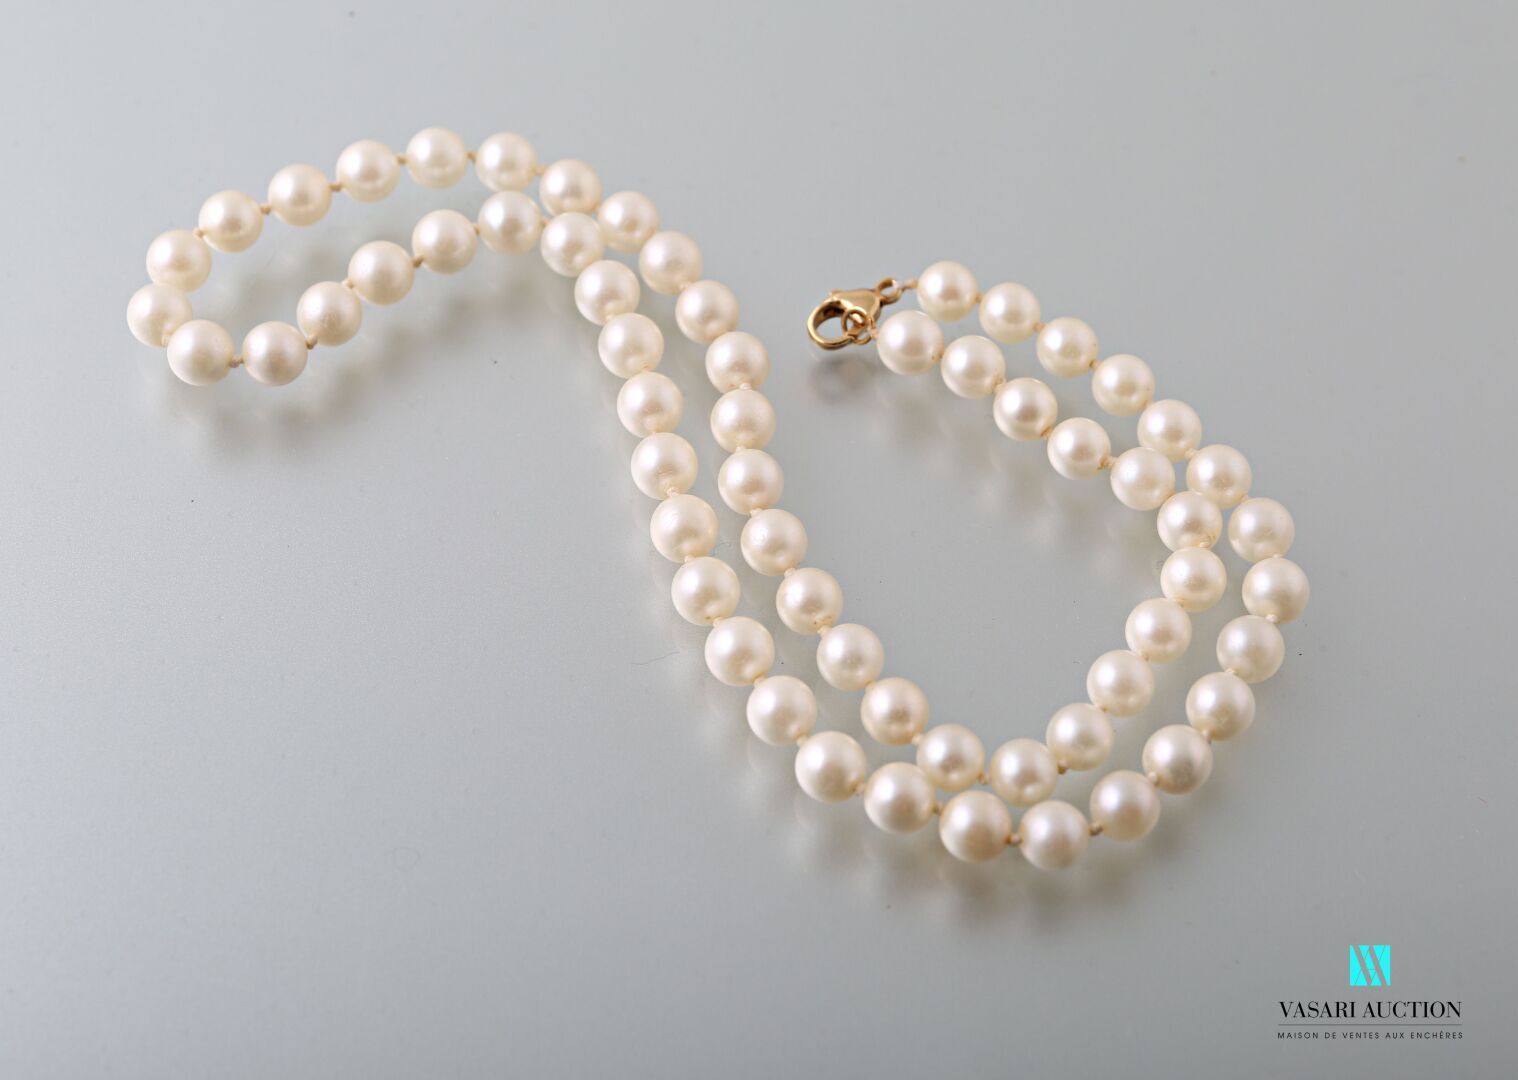 Null 由61颗文化珍珠组成的项链，750千分之一的黄金搭扣，长48厘米。珍珠的直径约为6,7毫米。

毛重28,4克。